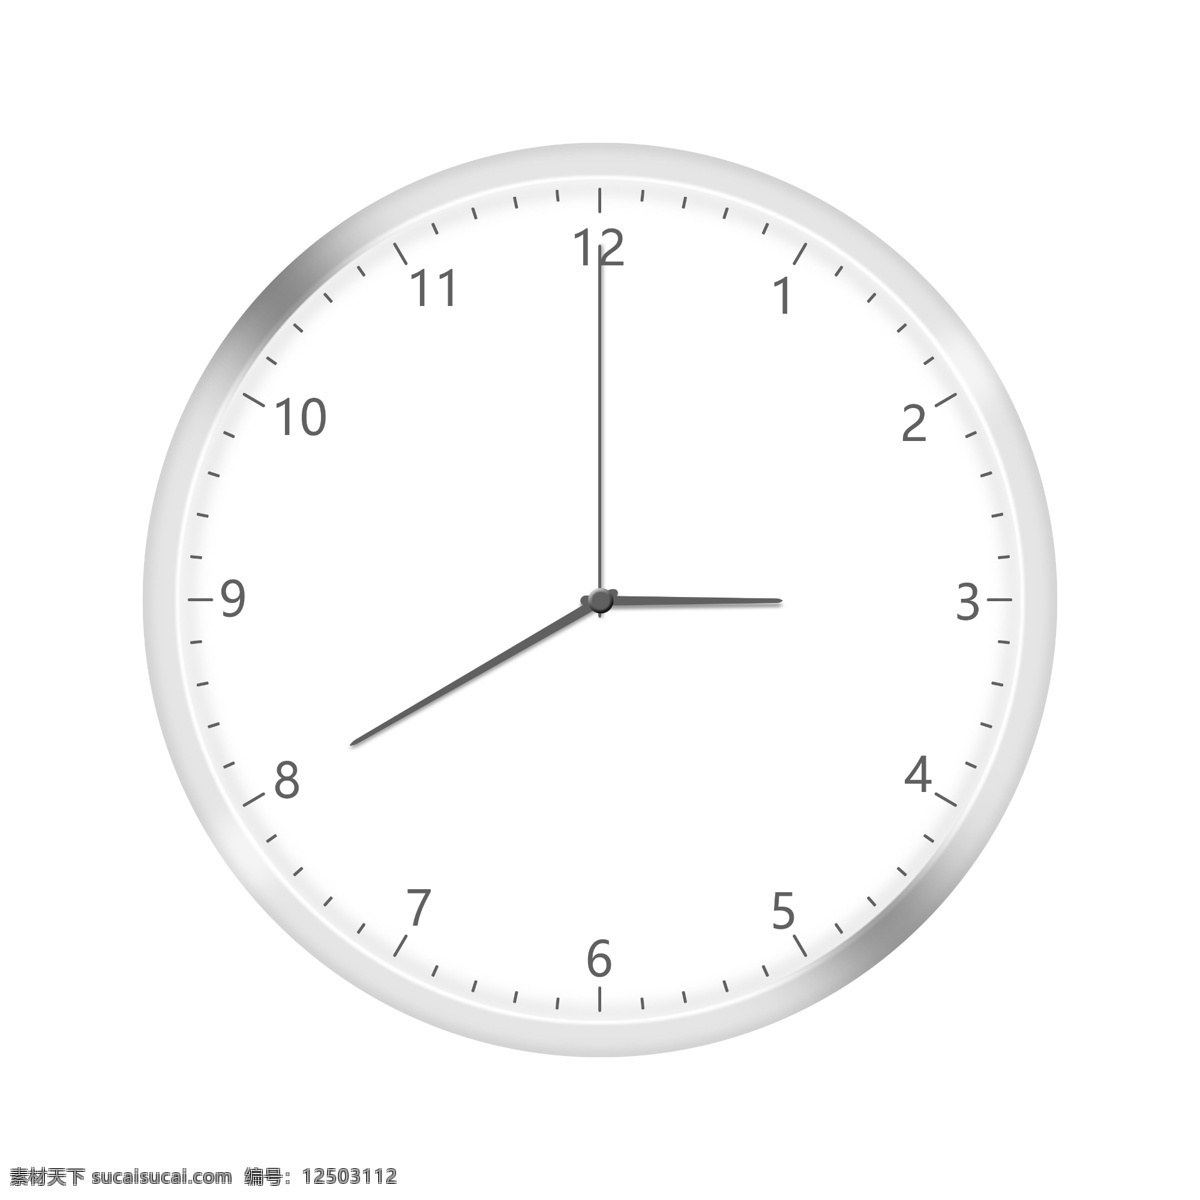 钟表图片 时间表 钟刻表 表 挂钟 家钟 时间钟 钟表 分层